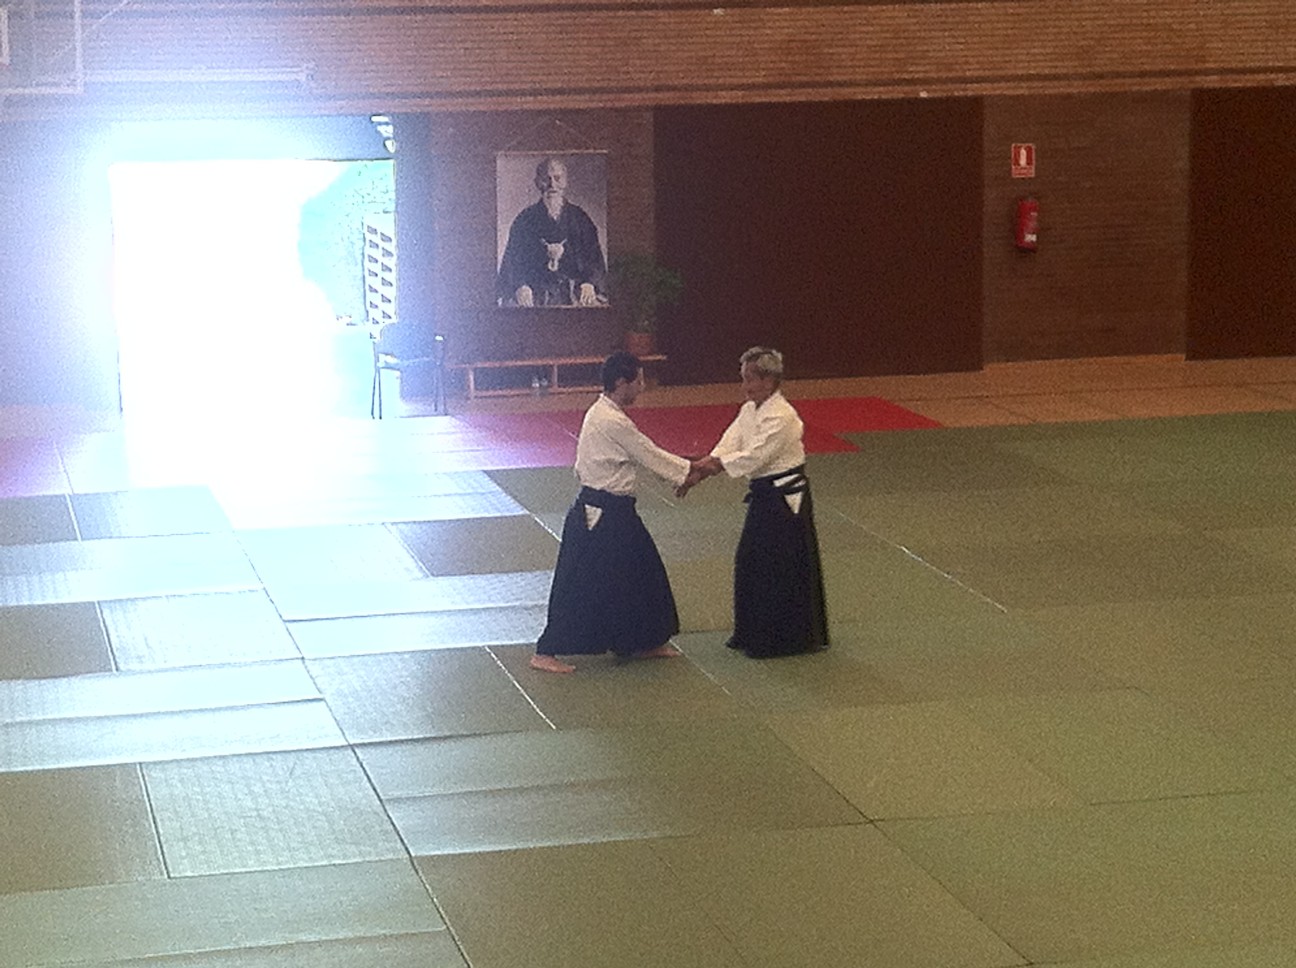 curso-de-aikido-con-el-sensei-kitaura-en-guadarrama-madrid_t20_W2nxzg